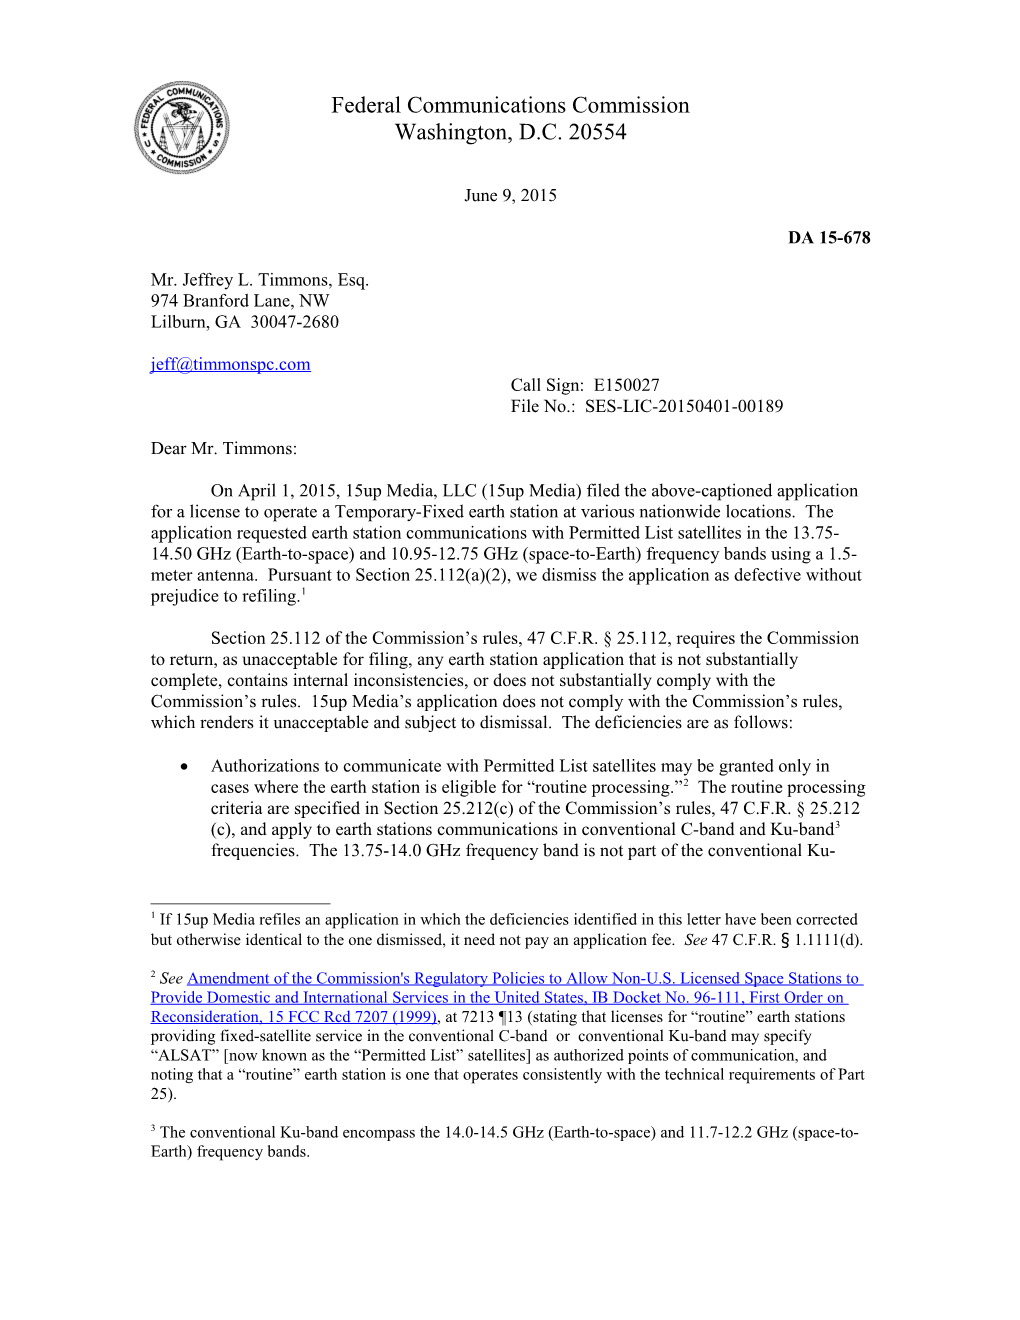 Federal Communications Commission DA 15-678